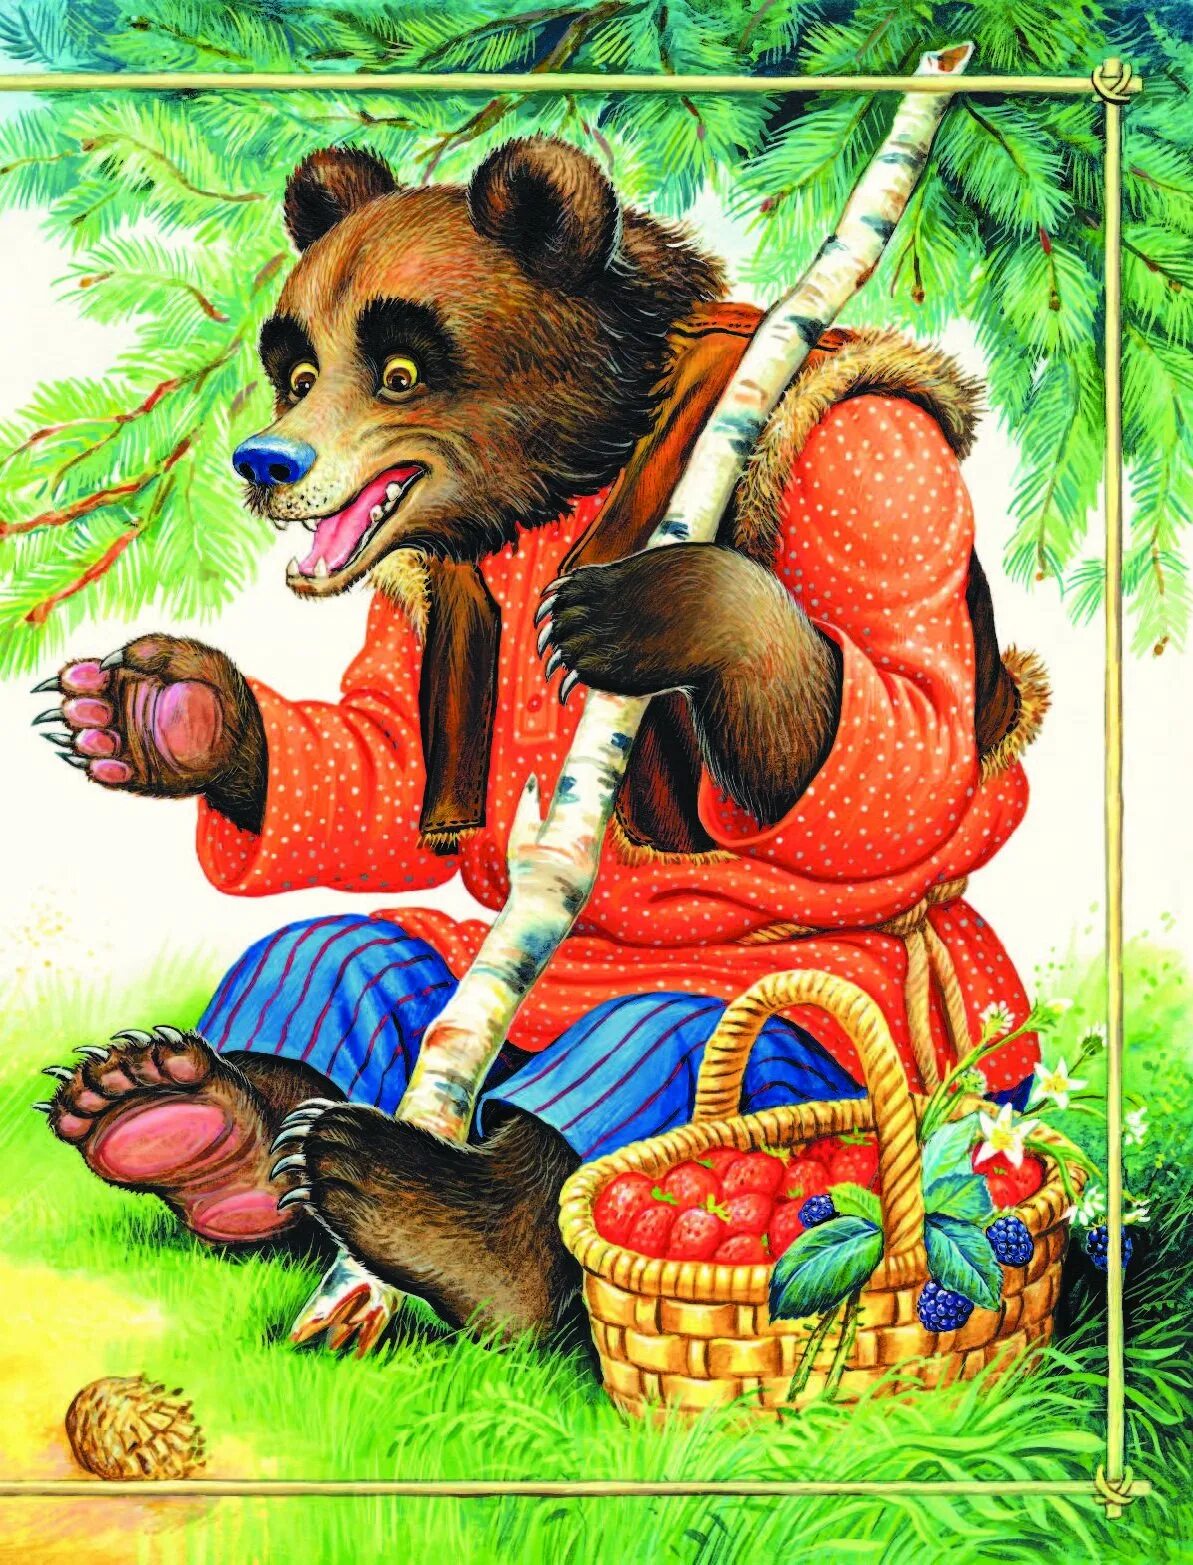 Медведь из сказки. Иллюстрации к сказкам. Медведь сказочный. Иллюстрации к русским народным сказкам.